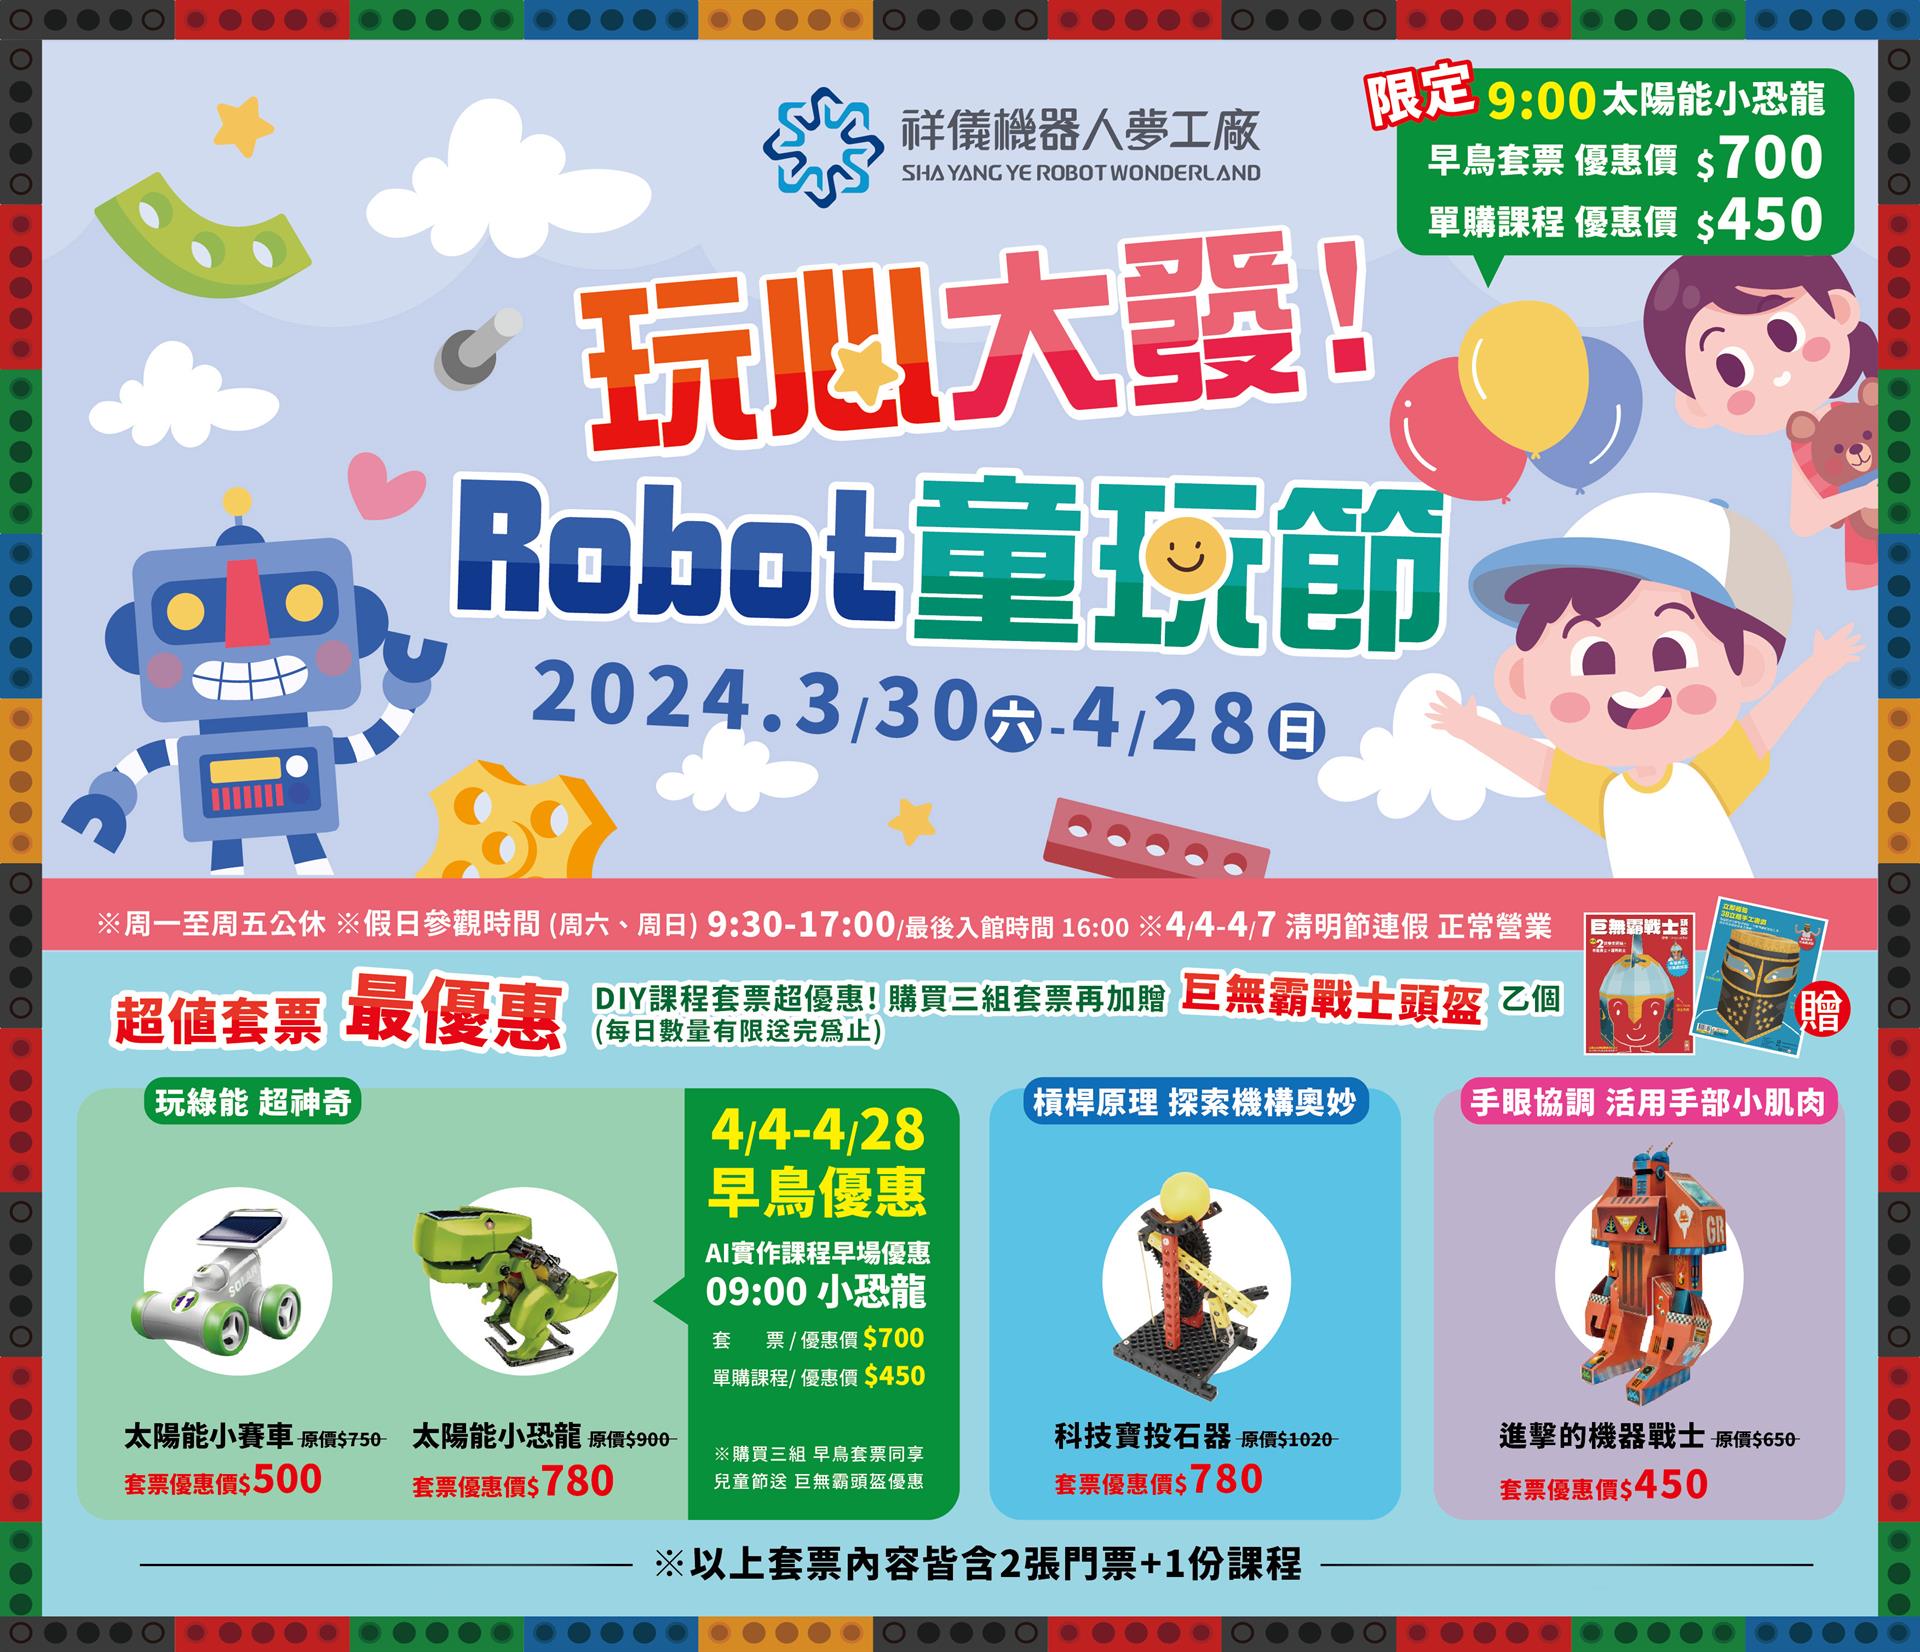 🤩歡樂4月就要來祥儀機器人夢工廠玩Robot童玩節🥳